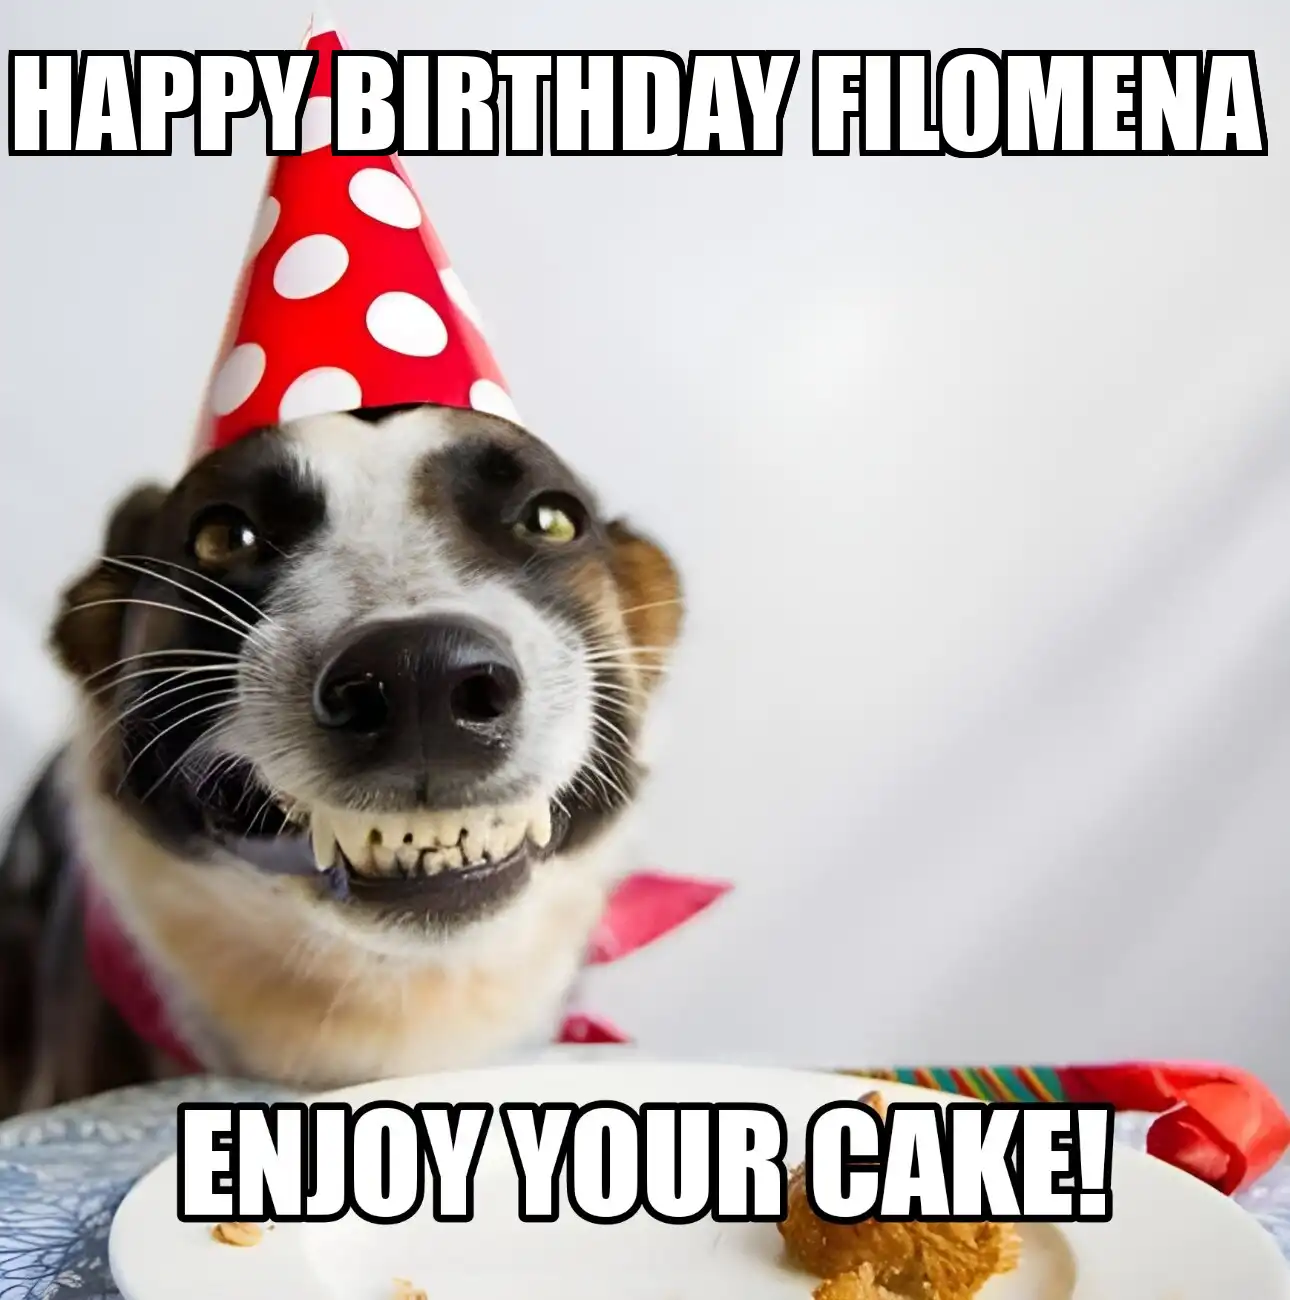 Happy Birthday Filomena Enjoy Your Cake Dog Meme